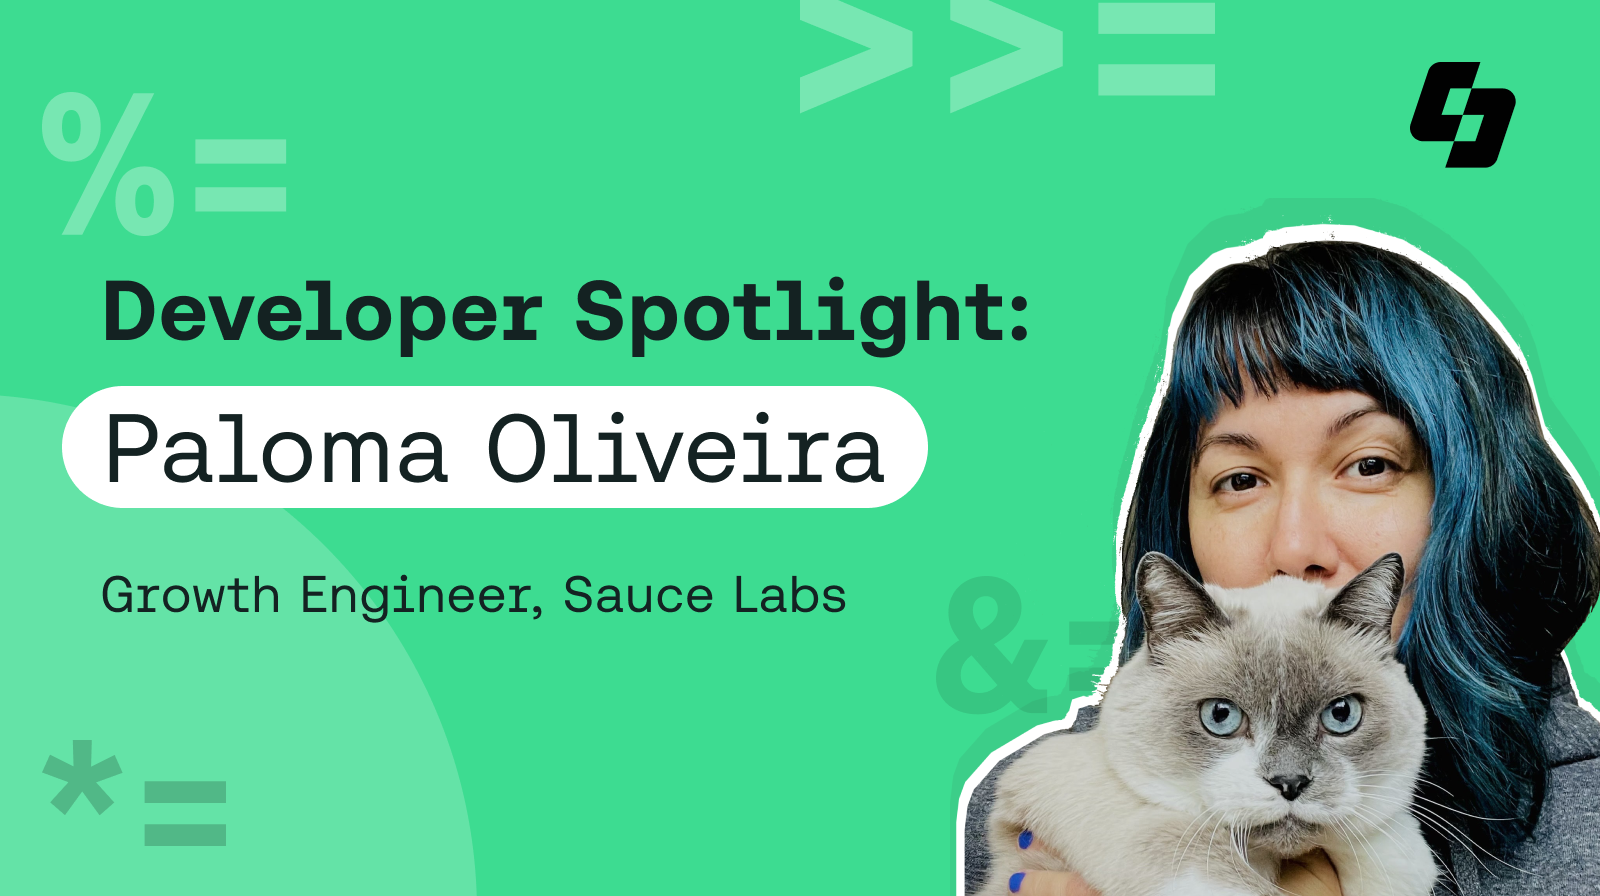 Headline image for Developer Spotlight blog on Paloma Oliveira